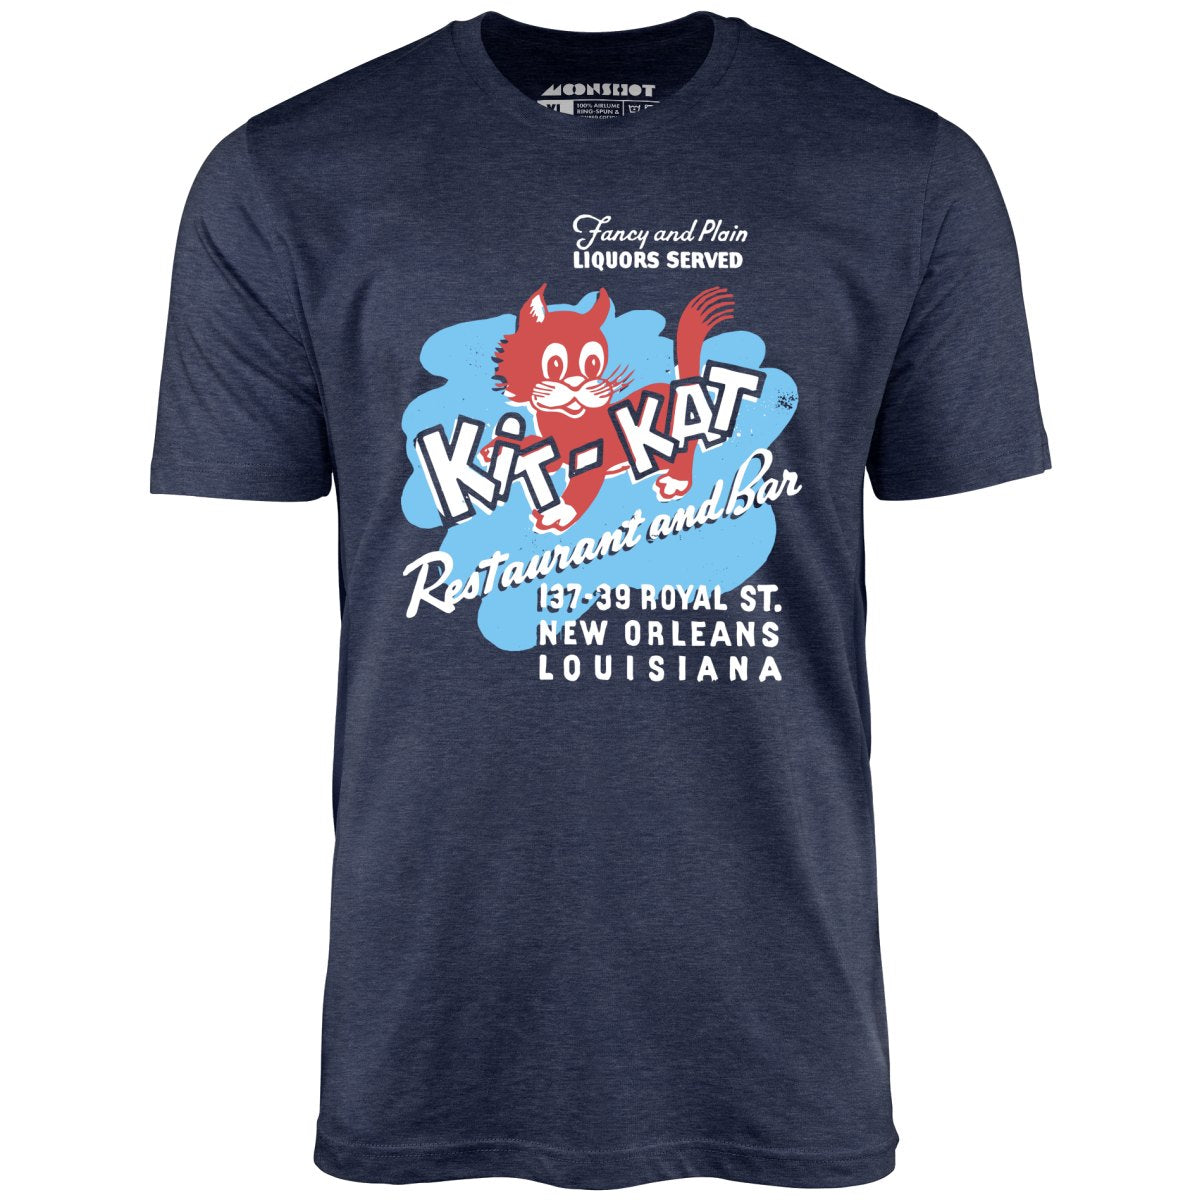 Kit-Kat - New Orleans, LA - Vintage Restaurant - Unisex T-Shirt